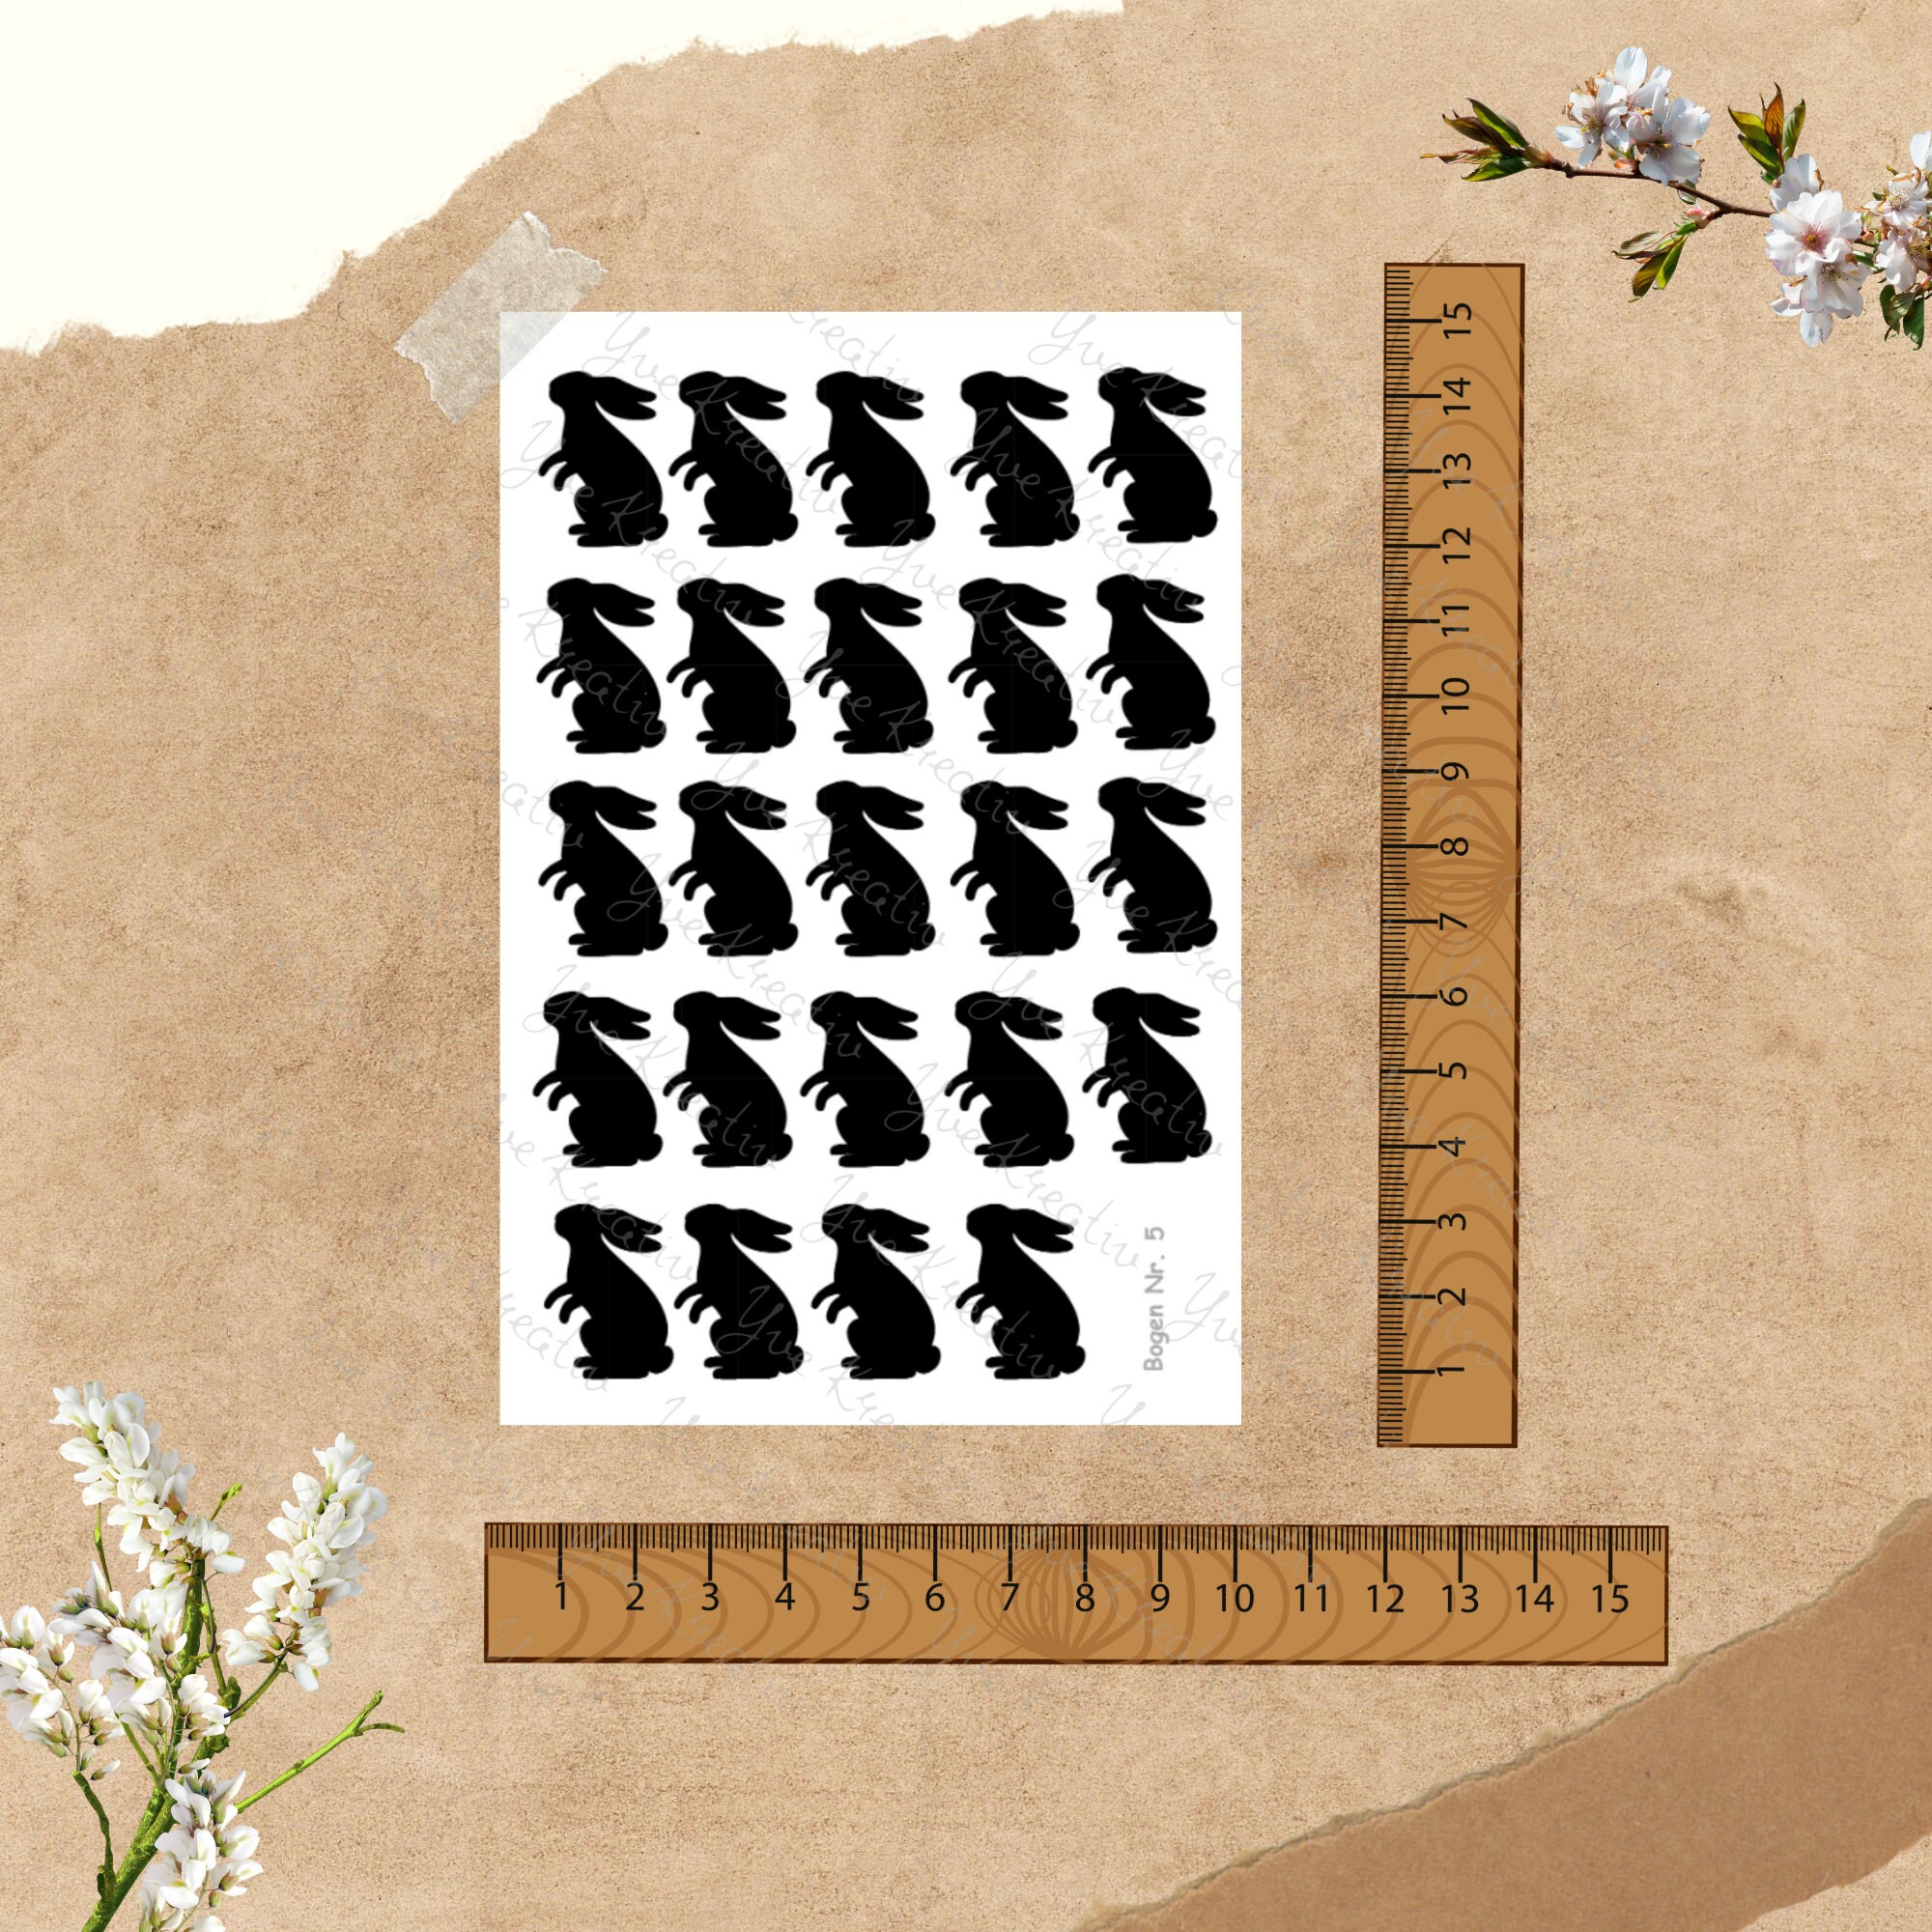 Sticker Bogen - Ostern Hase | 24 Sticker pro Bogen - Journal Sticker - Aufkleber 3 Stickerbogen zur Auswahl I Farbe wählbar